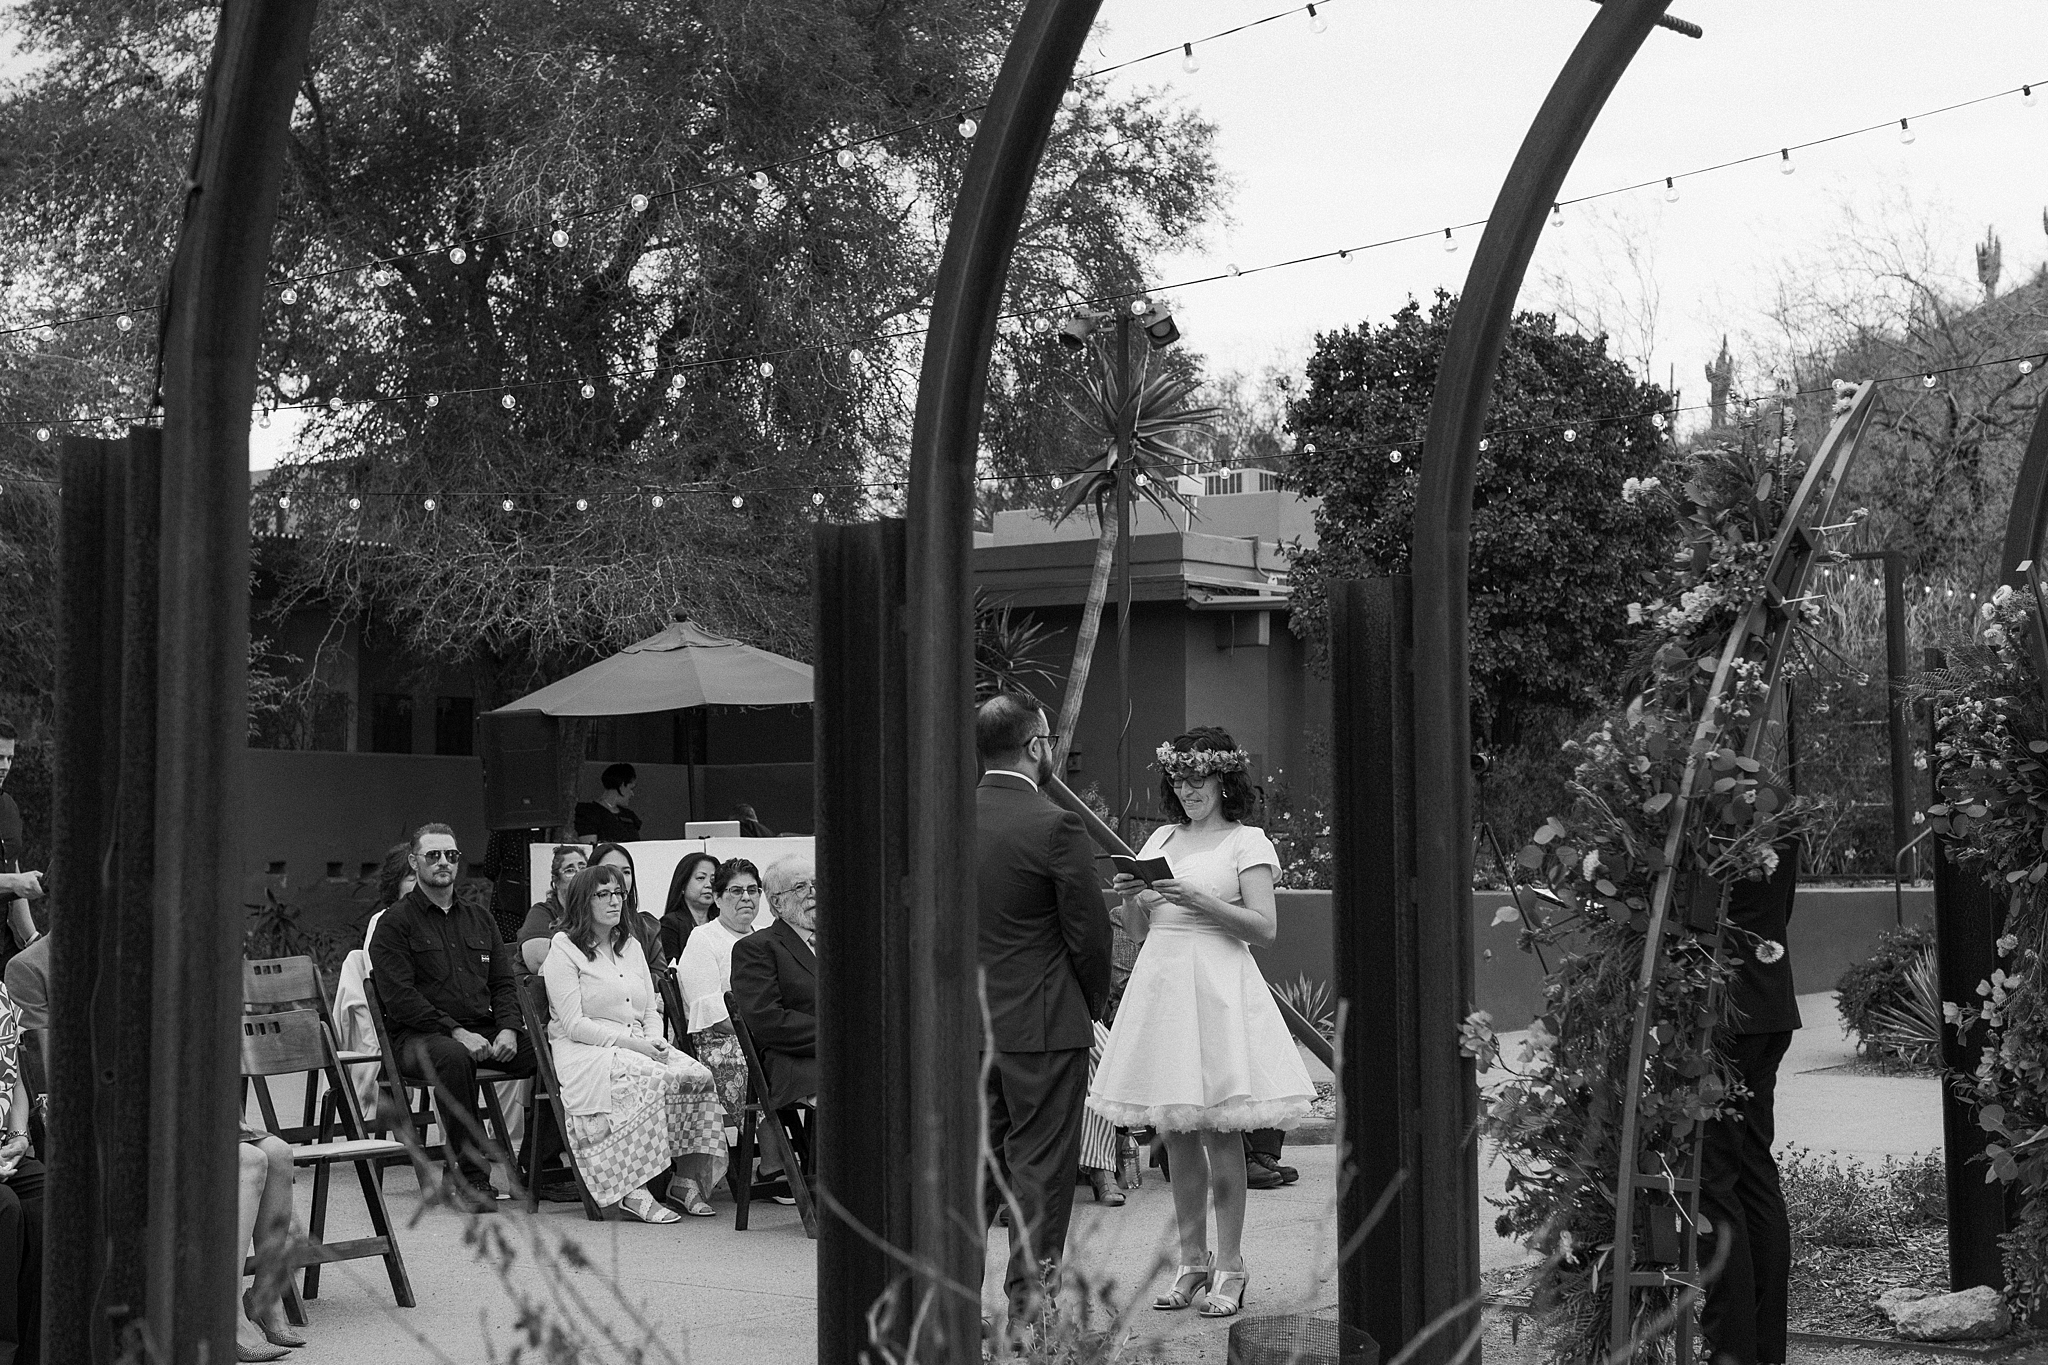 Desert Botanical Garden Wedding Photos, Steele Herb Garden Wedding, Phoenix Wedding Ceremony, The Hoskins Photography, Outdoor Wedding Venue, Wedding Vows